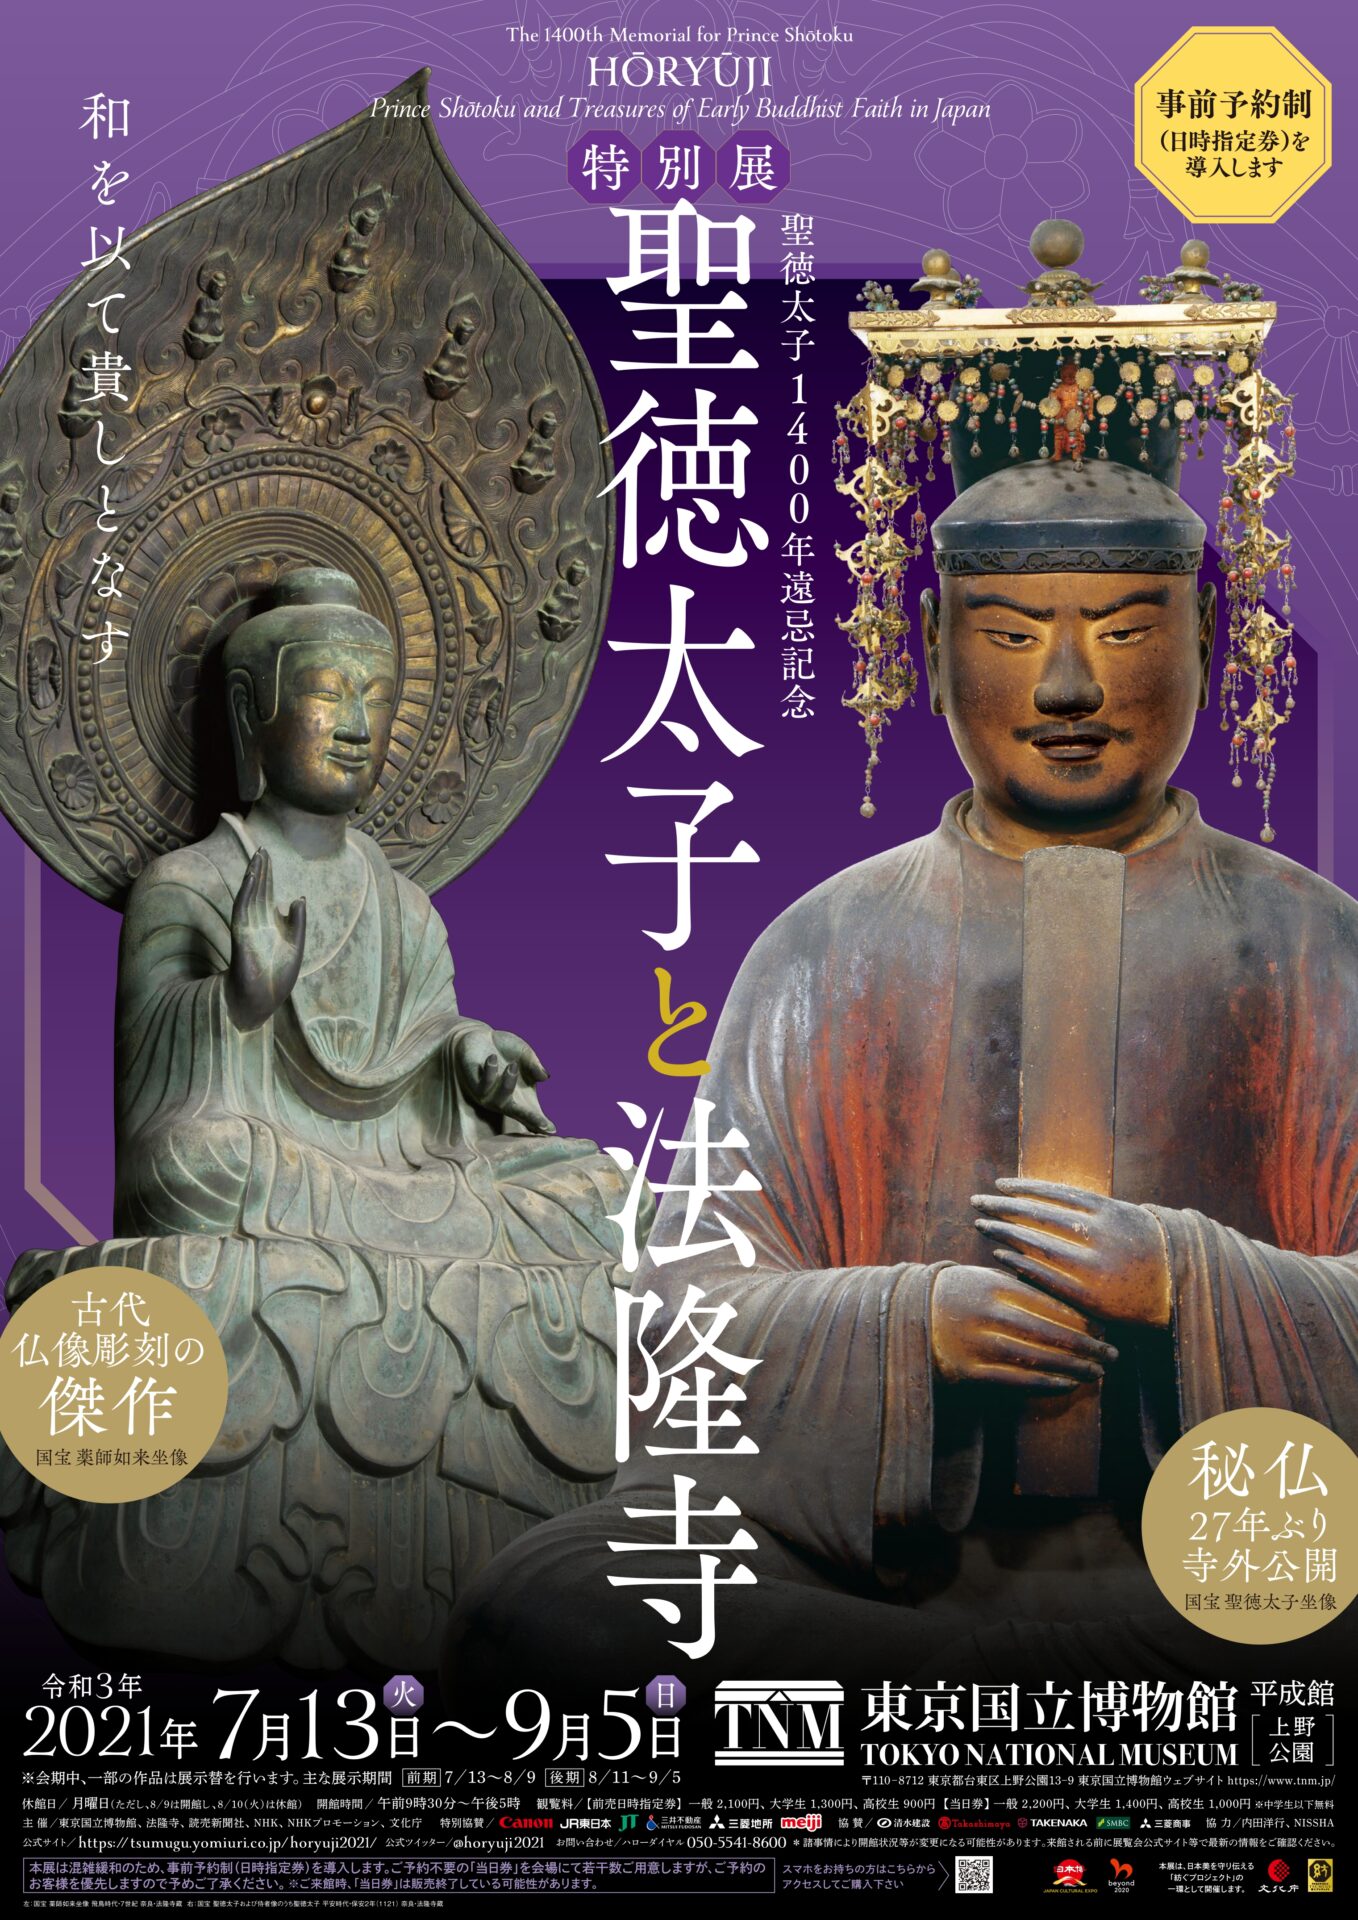 聖徳太子と法隆寺 聖徳太子 法隆寺 1400年遠忌 東京国立博物館 特別展 文化財